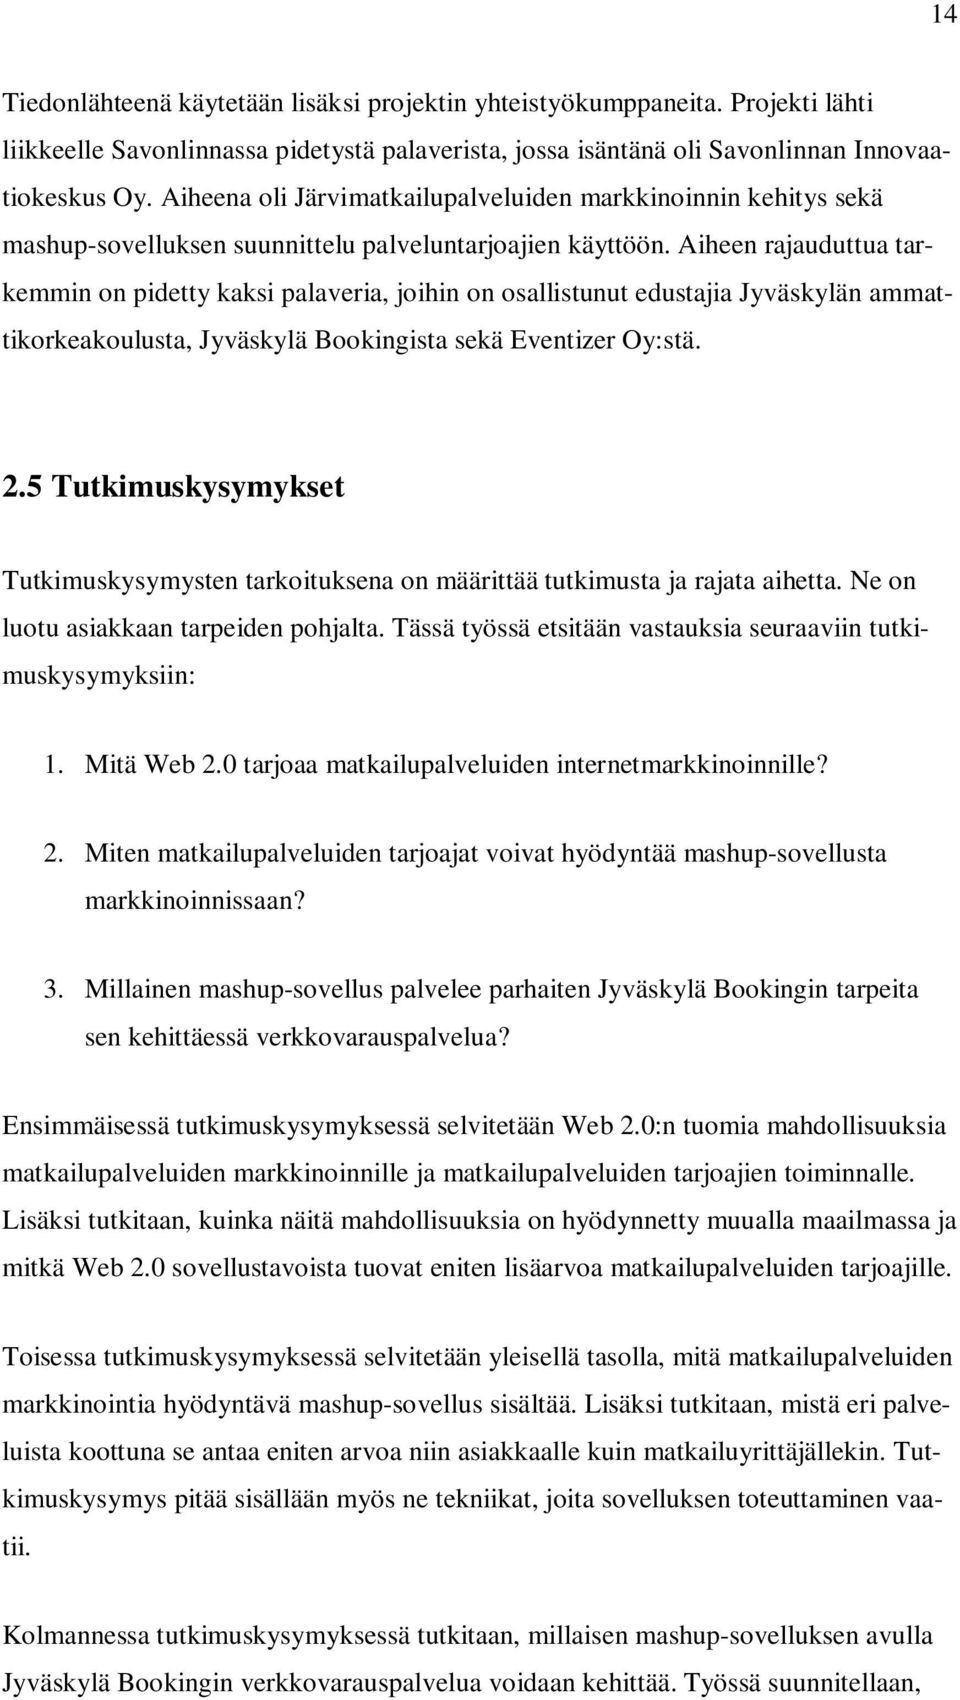 Aiheen rajauduttua tarkemmin on pidetty kaksi palaveria, joihin on osallistunut edustajia Jyväskylän ammattikorkeakoulusta, Jyväskylä Bookingista sekä Eventizer Oy:stä. 2.